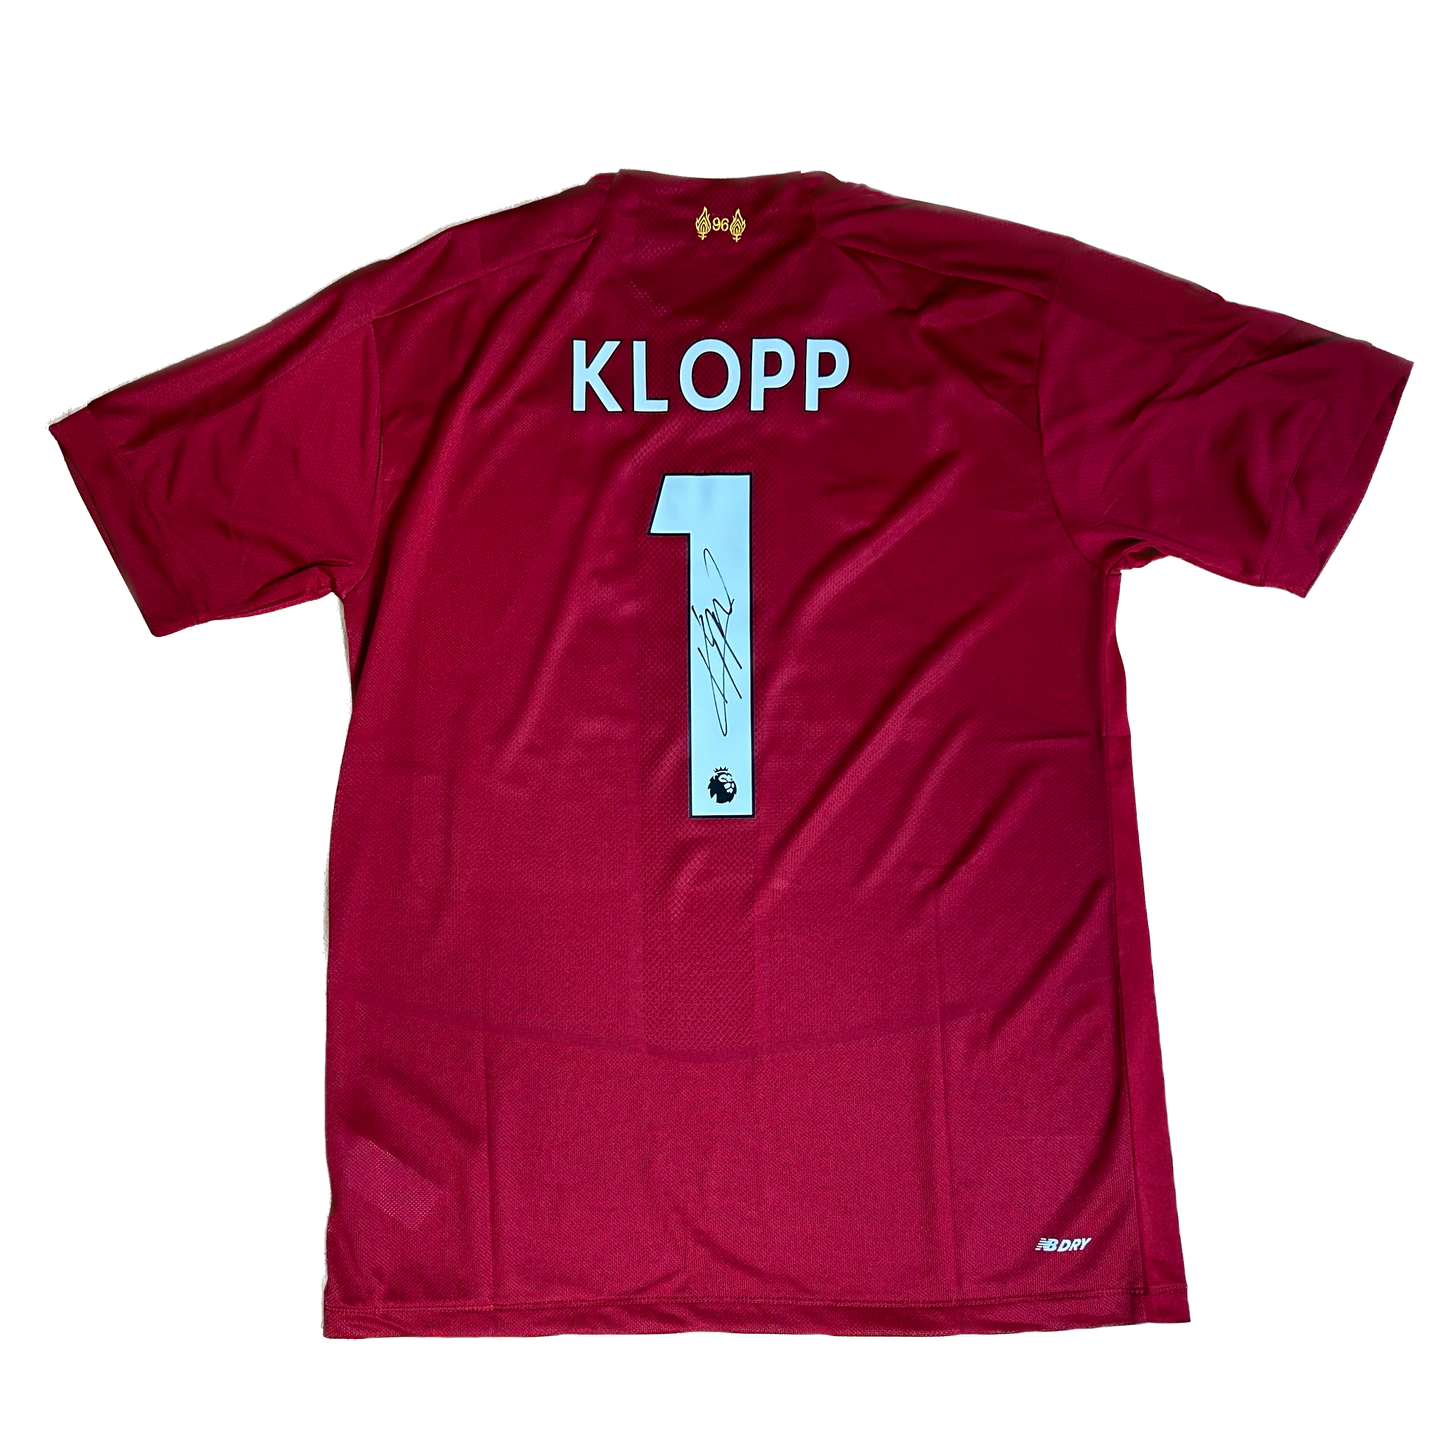 Signed Jurgen Klopp Liverpool Home Shirt 2019/20